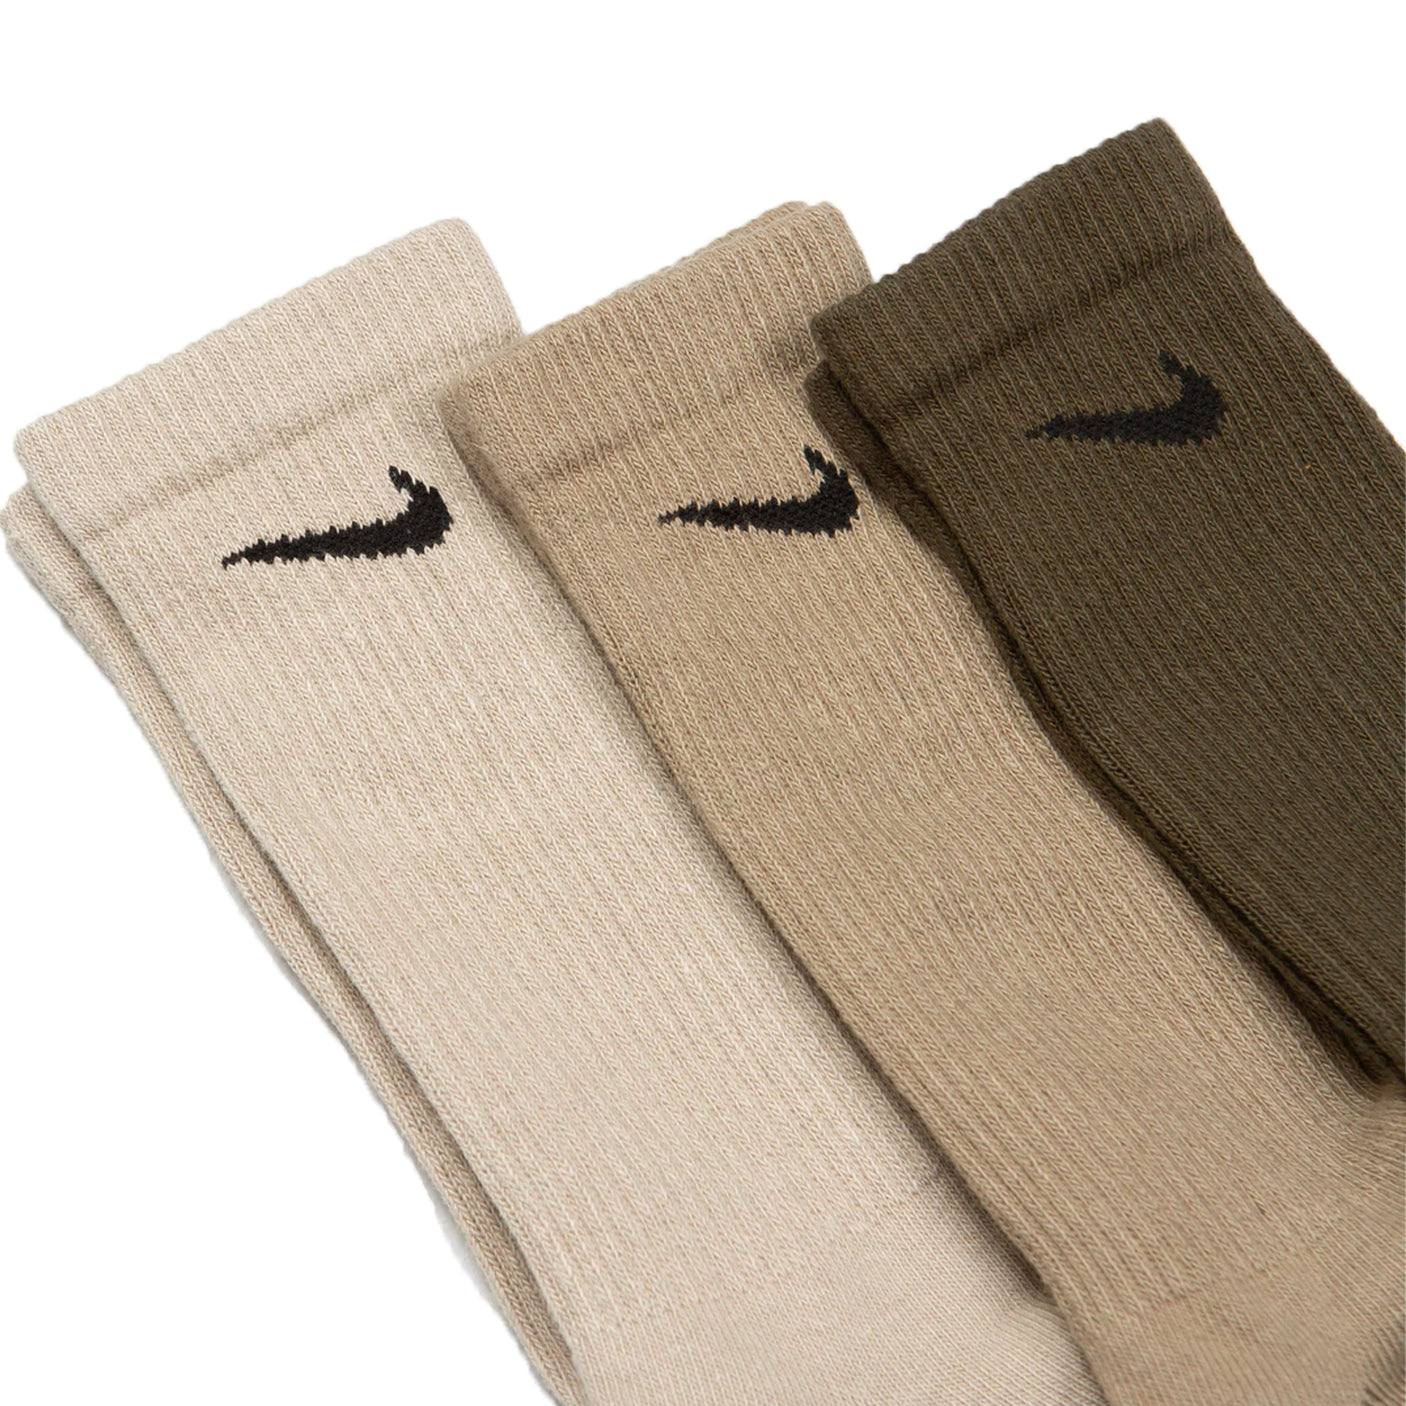 Nike Everyday Plus Cushioned Socks 3 Pack Olive/Stone/Khaki